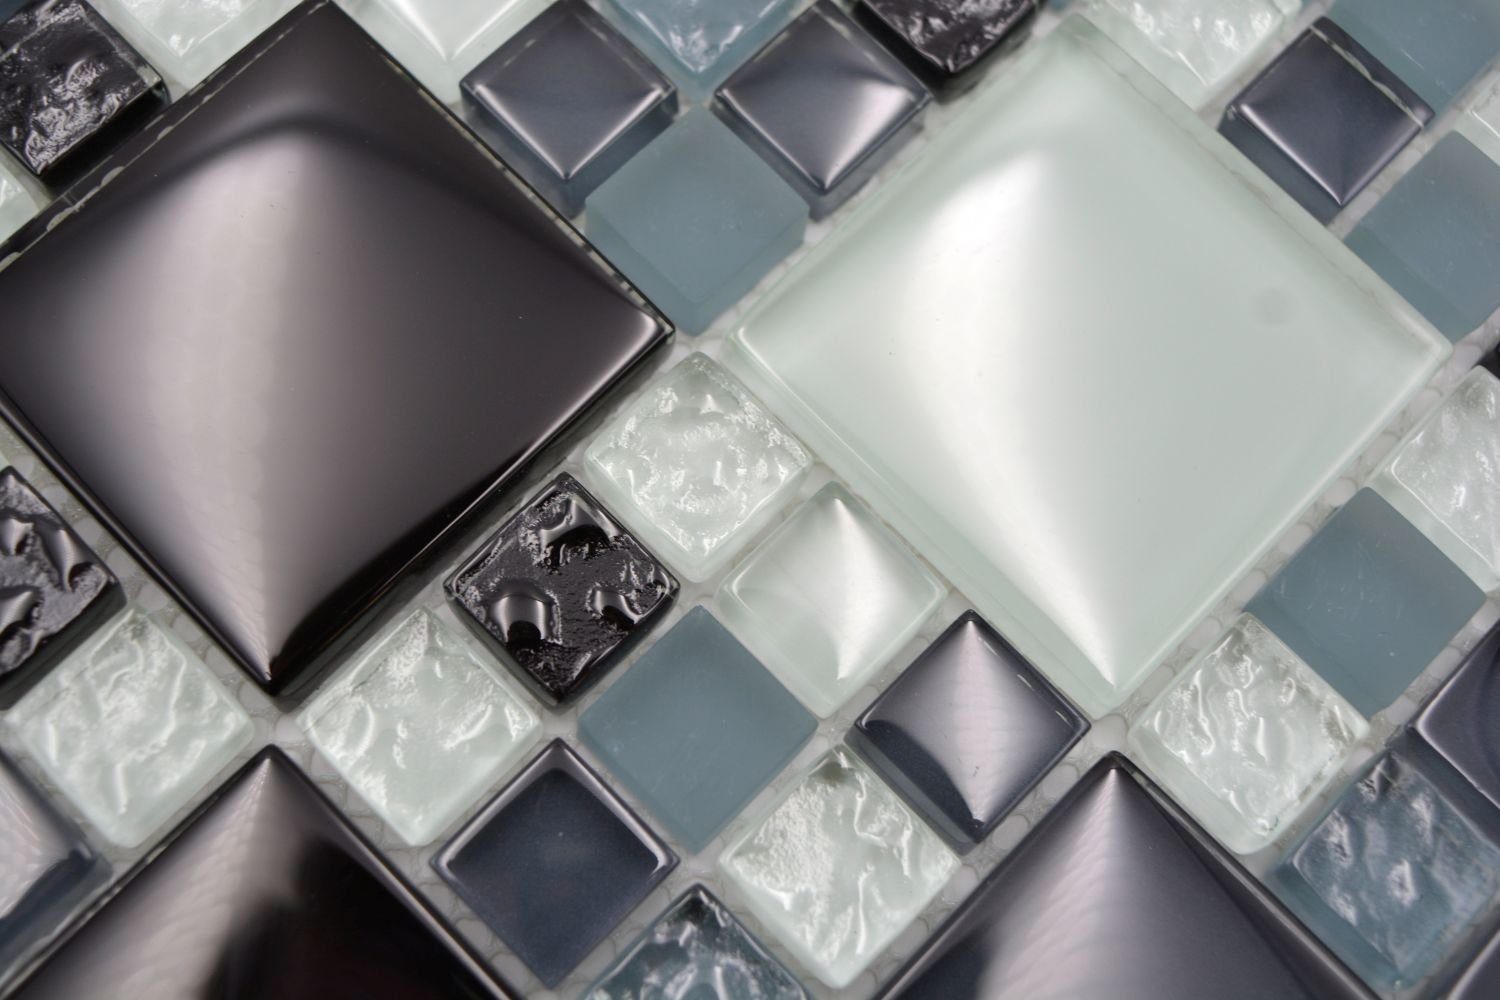 Mosani Mosaikfliesen Glasmosaik Crystal glänzend Matten / 10 grau schwarz Mosaikfliesen